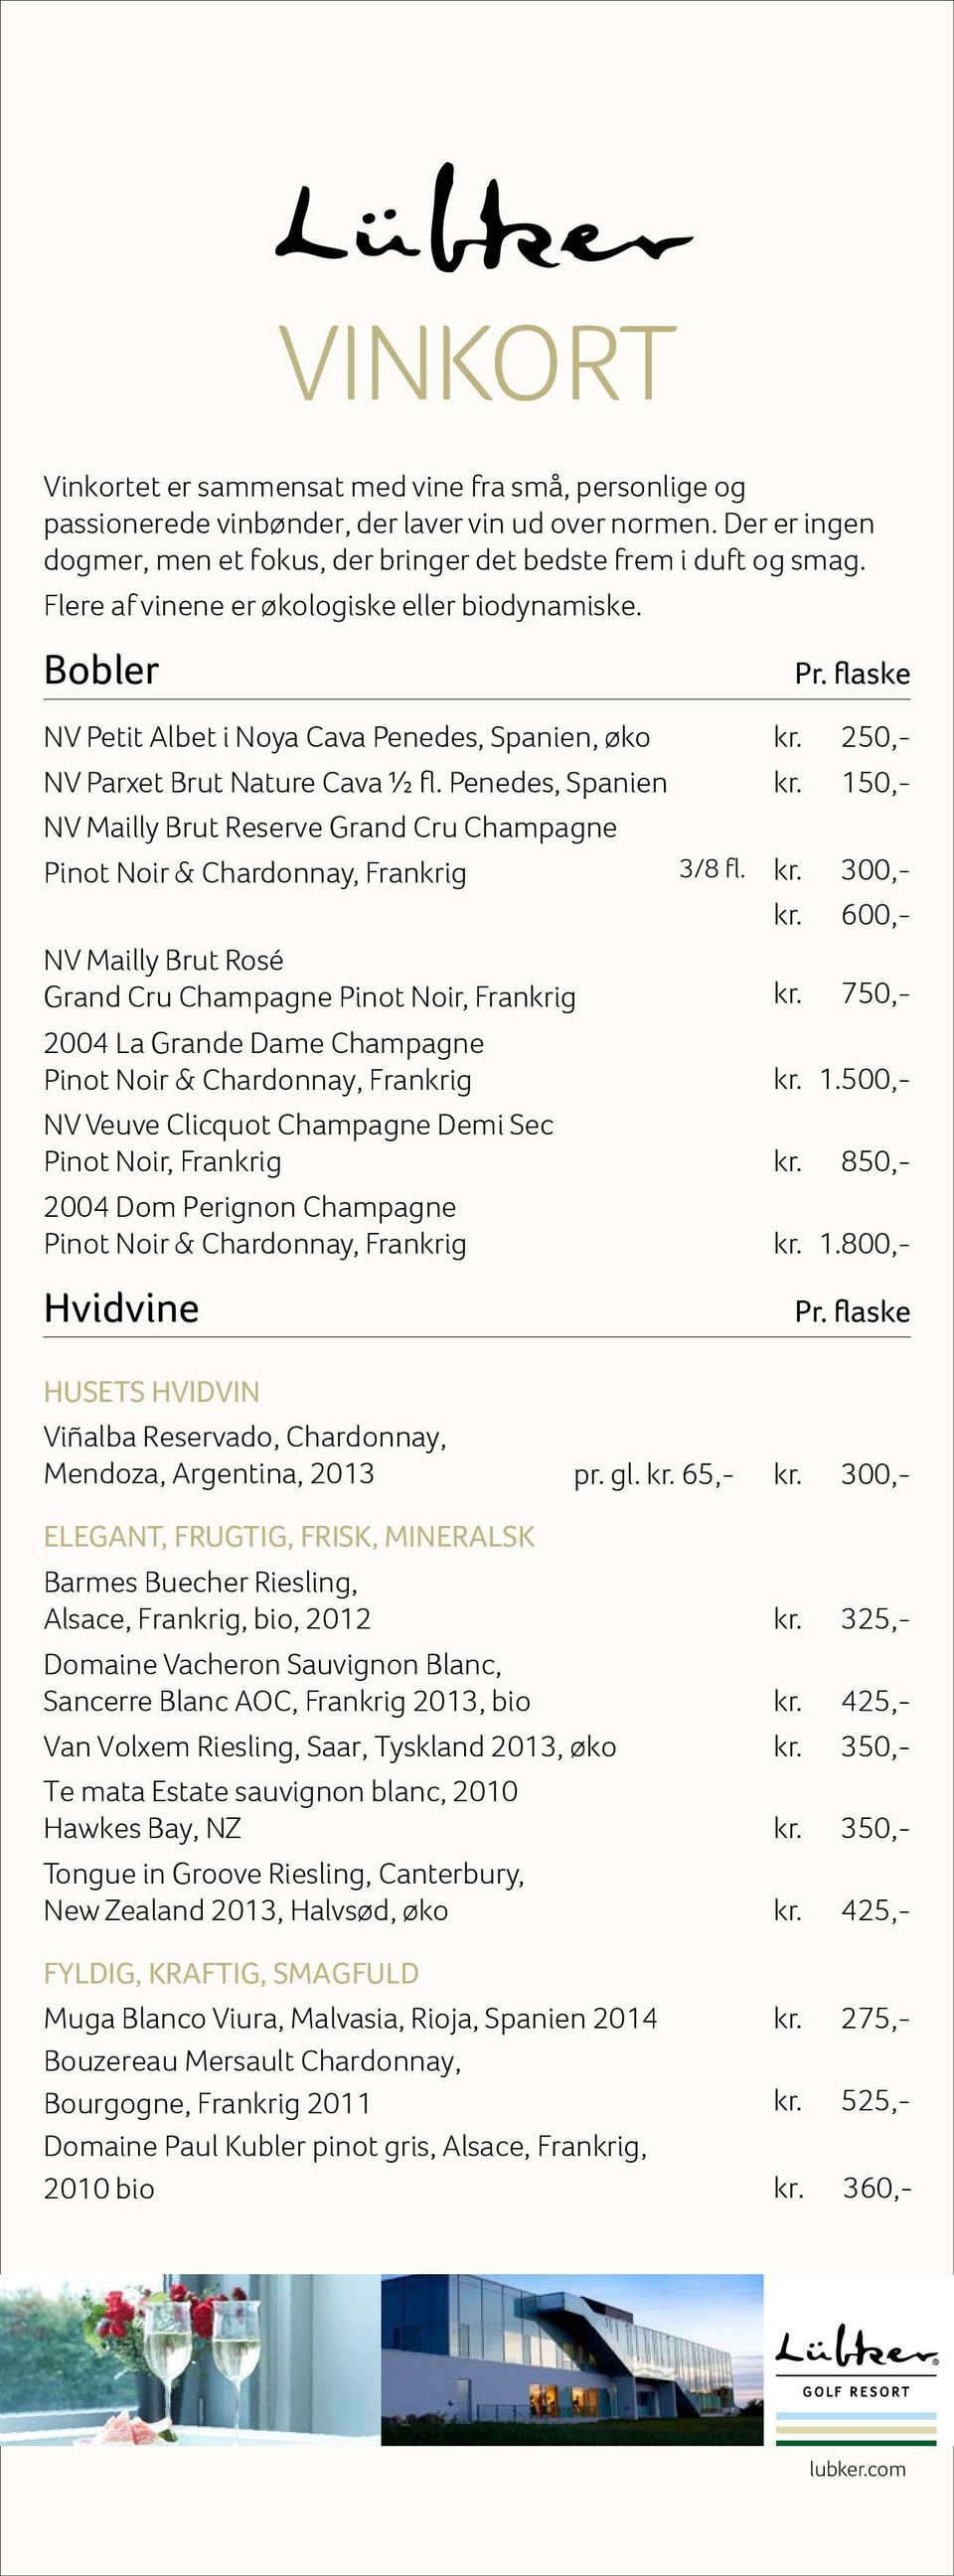 Penedes, Spanien 150,- NV Mailly Brut Reserve Grand Cru Champagne Pinot Noir & Chardonnay, Frankrig 300,- 600,- NV Mailly Brut Rosé Grand Cru Champagne Pinot Noir, Frankrig 750,- 2004 La Grande Dame